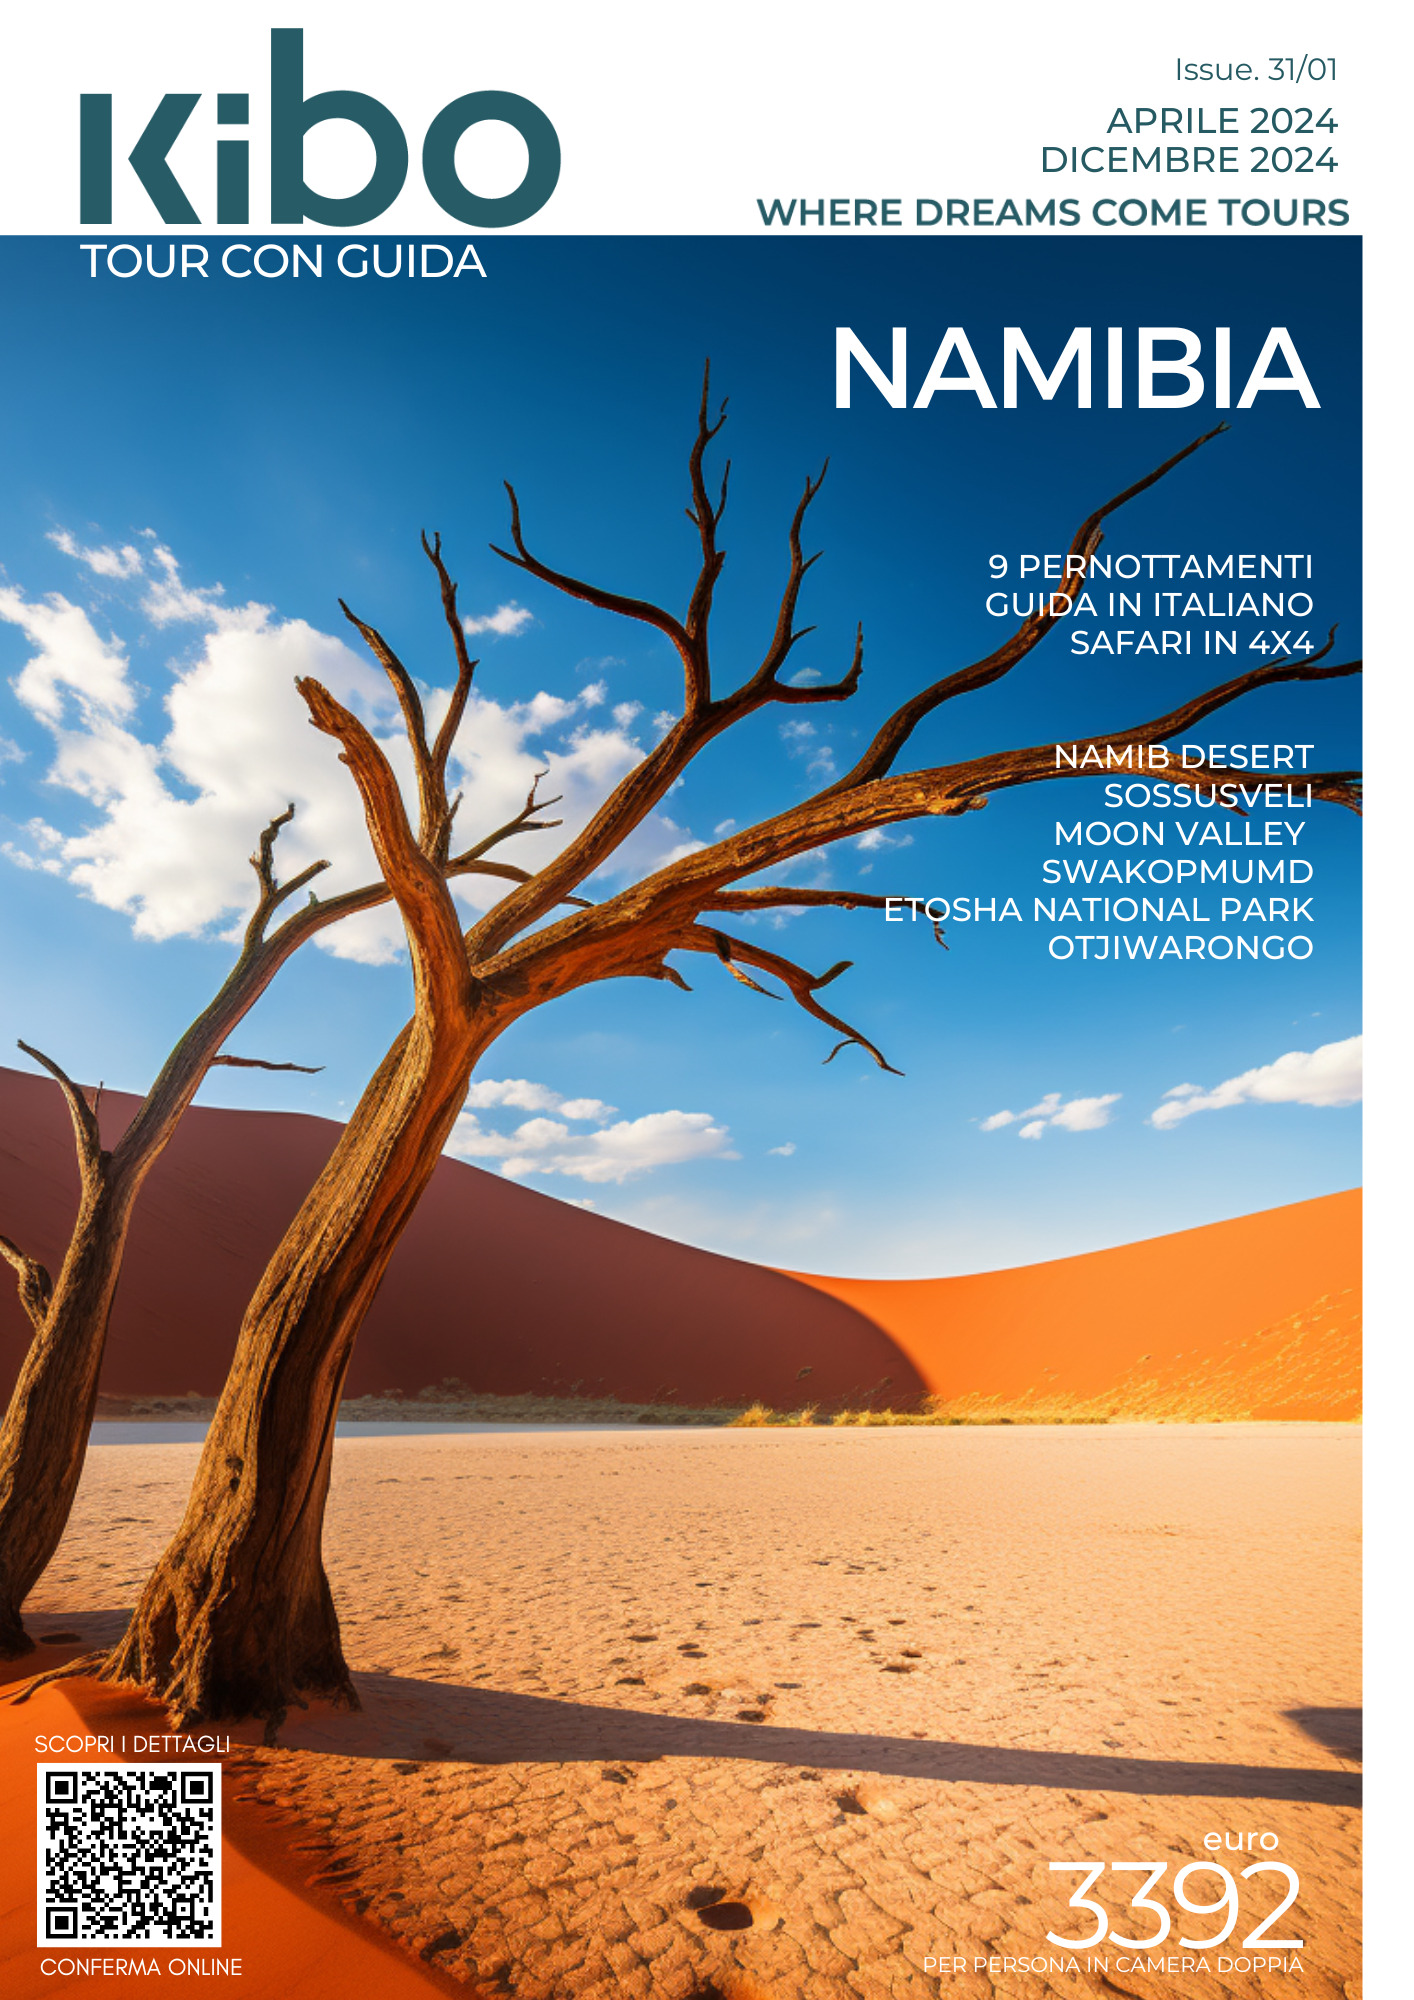 NAMIBIA IN ITALIANO